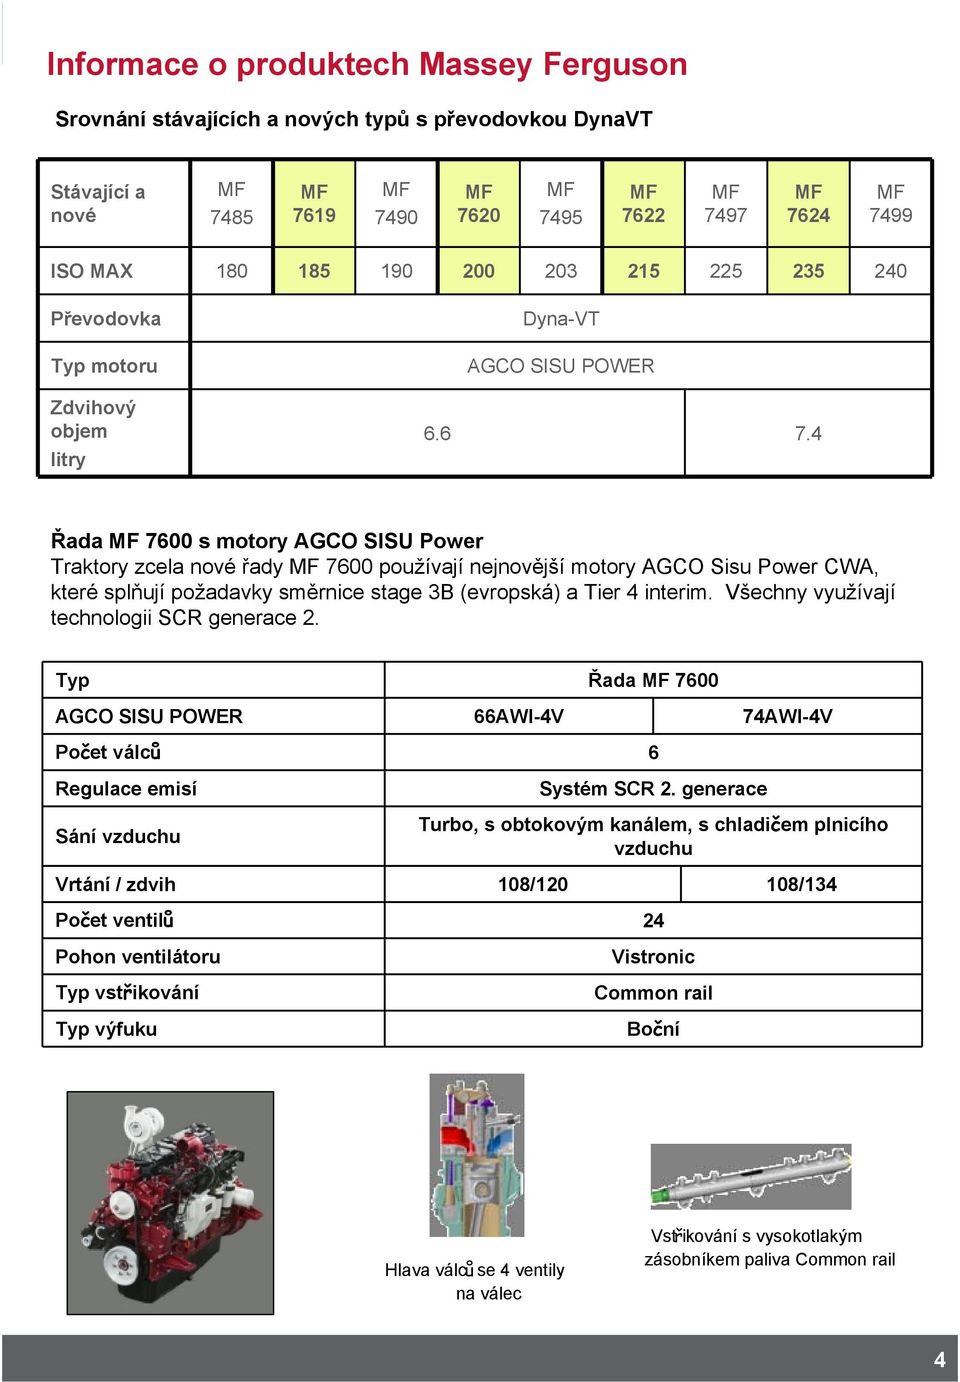 4 Řada MF 7600 s motory AGCO SISU Power Traktory zcela nové řady MF 7600 používají nejnovější motory AGCO Sisu Power CWA, které splňují požadavky směrnice stage 3B (evropská) a Tier 4 interim.